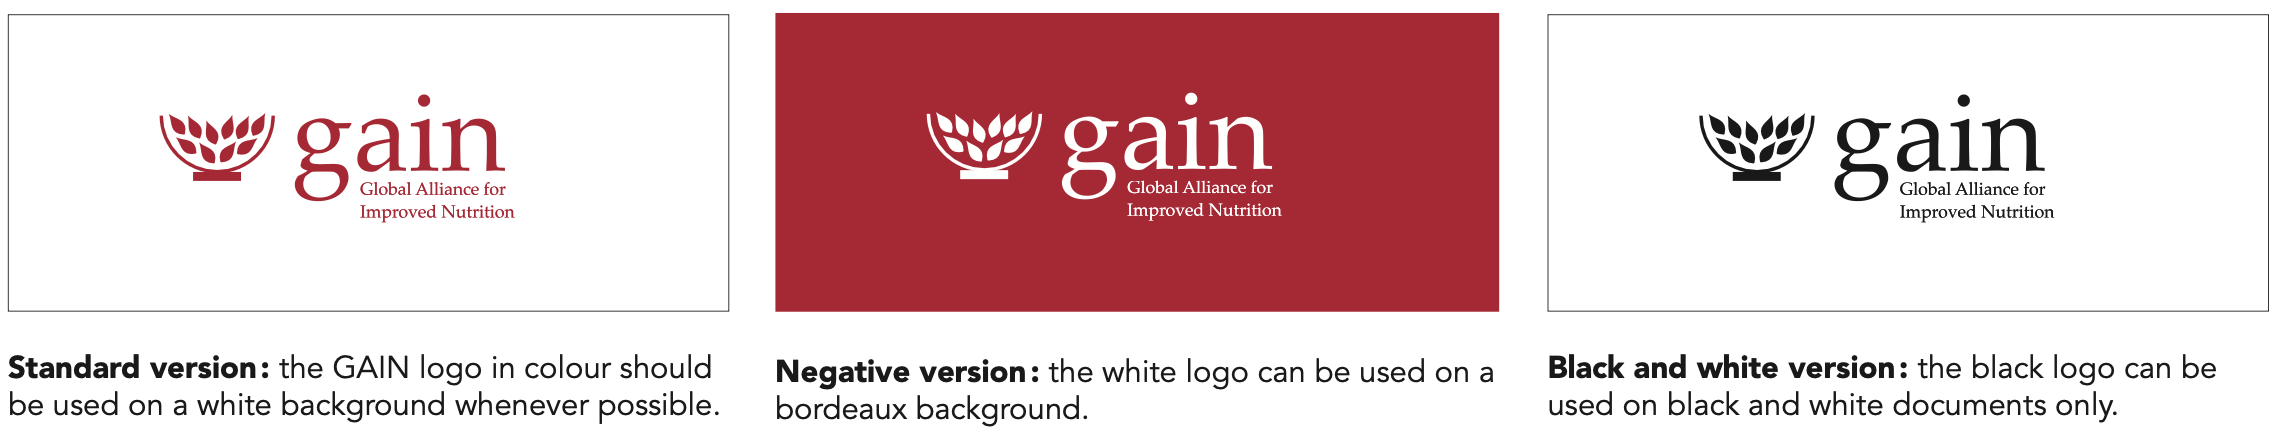 GAIN logo colors